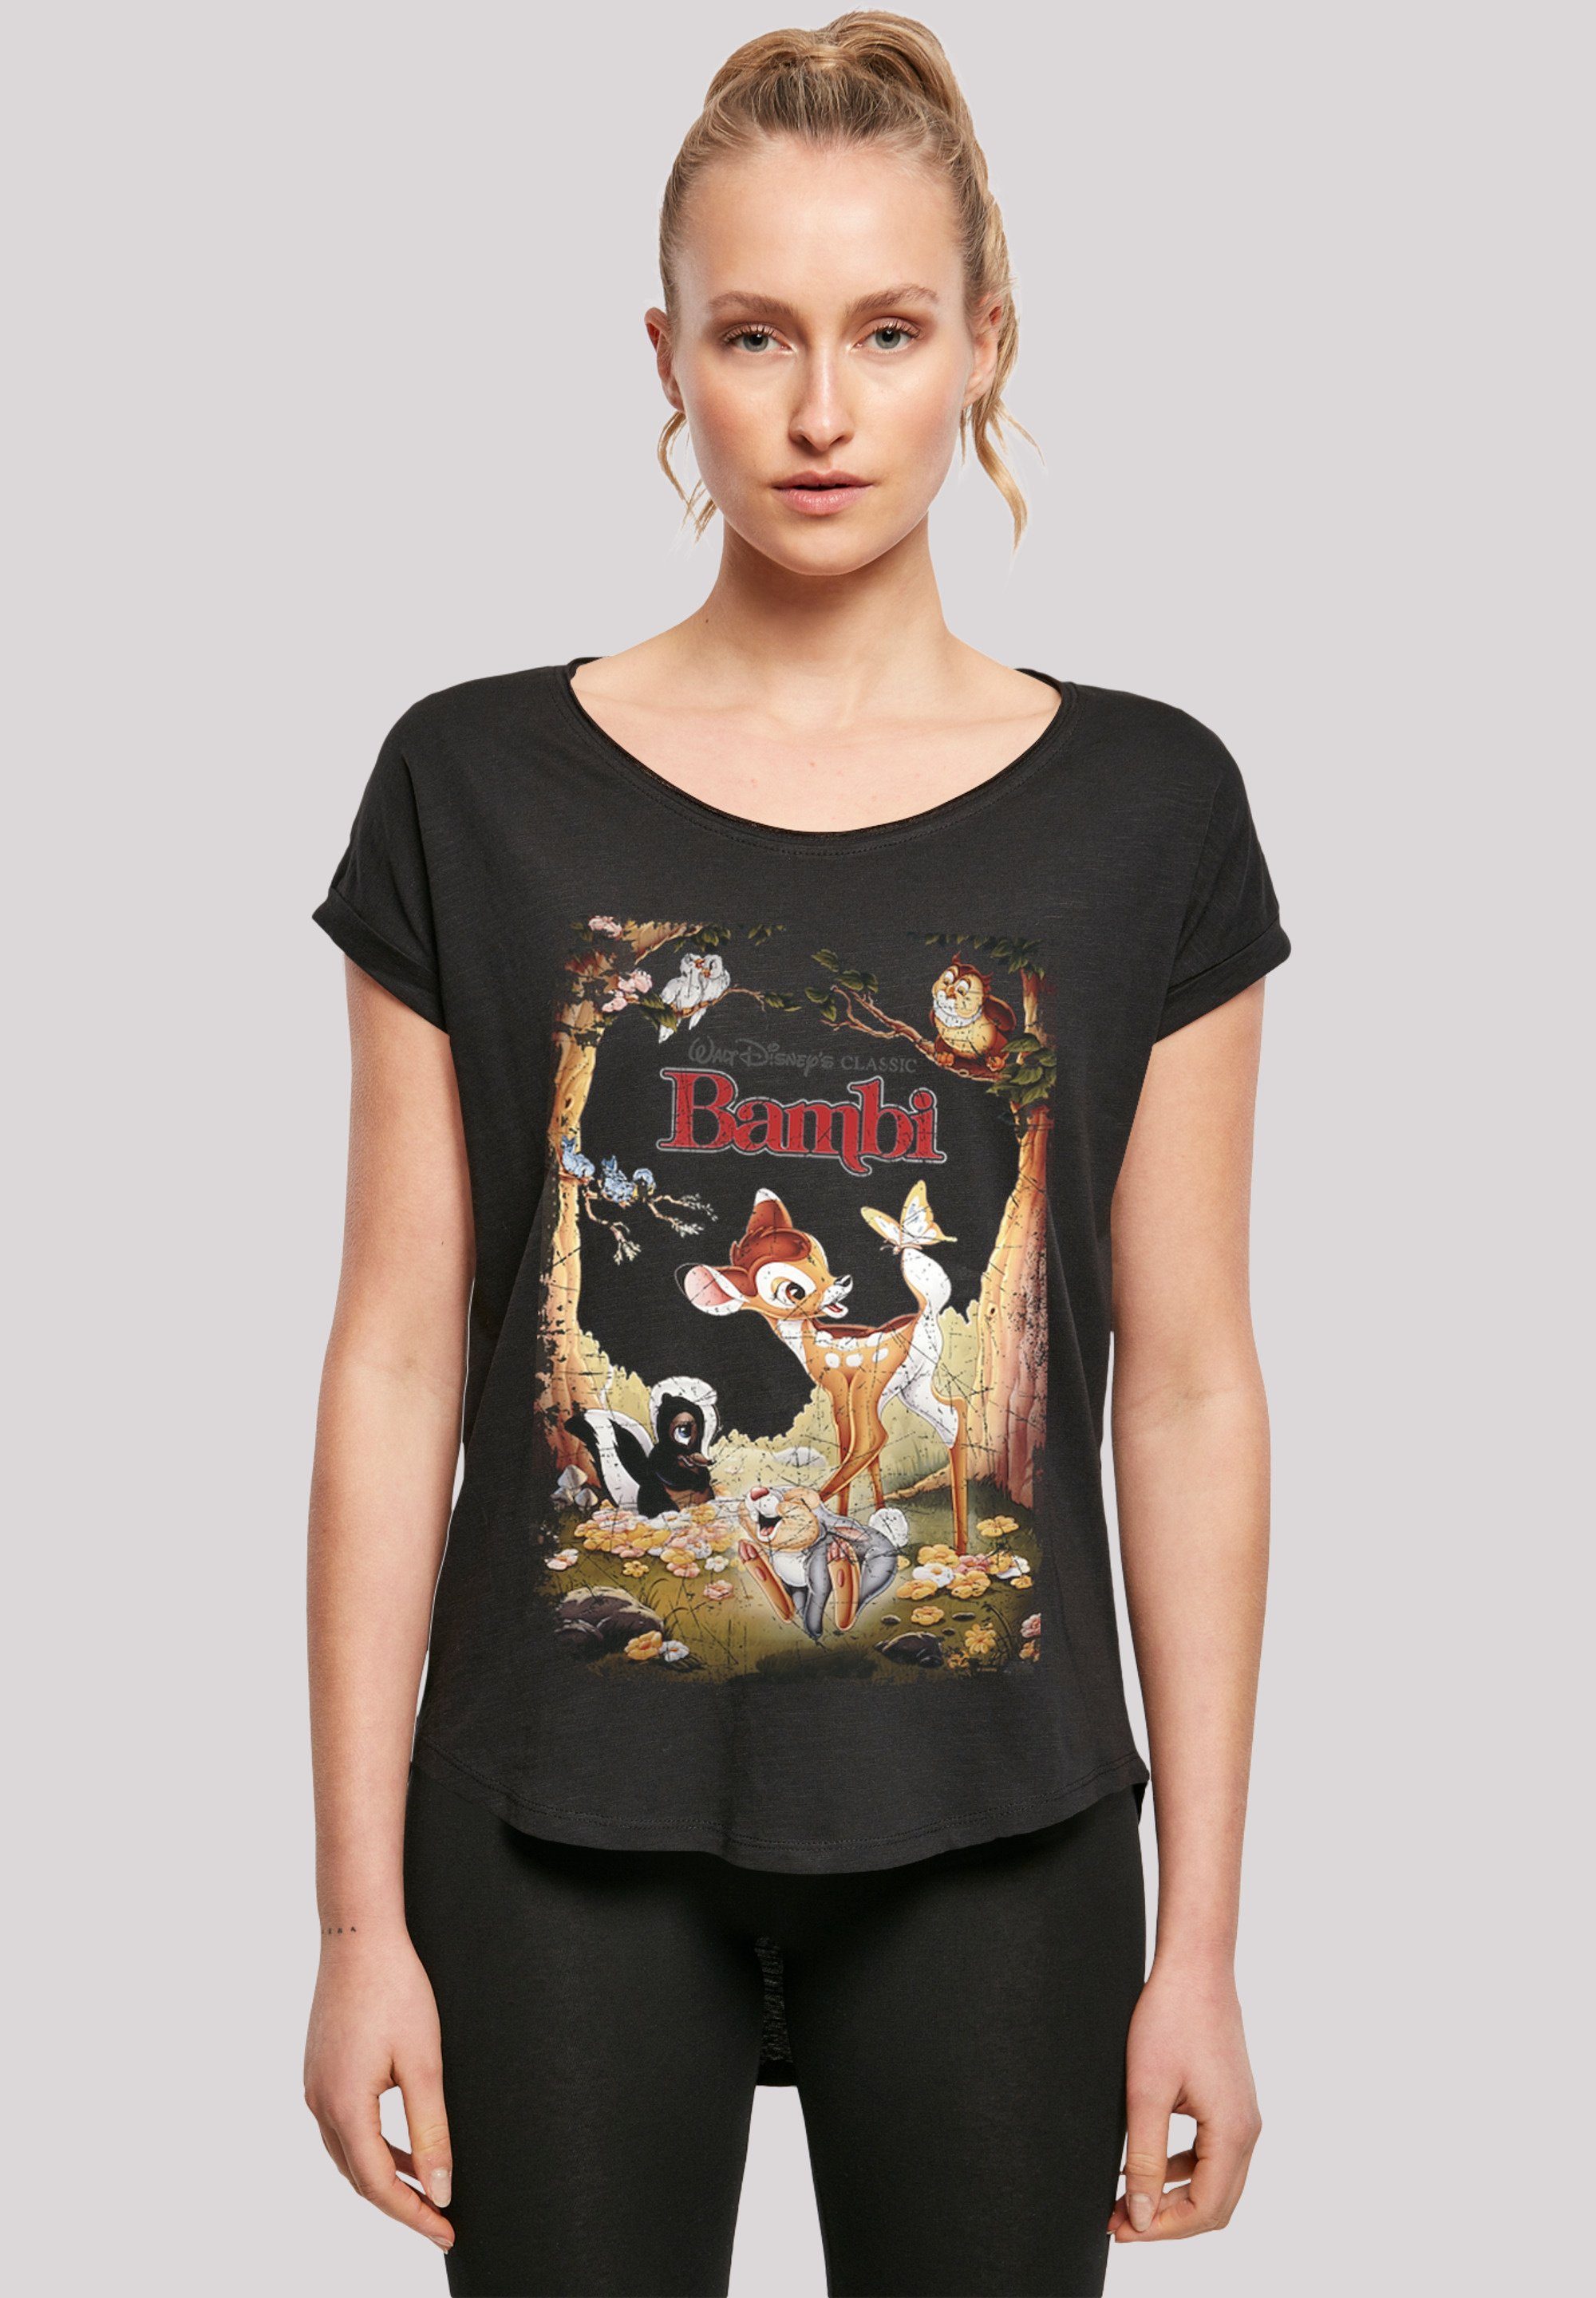 F4NT4STIC T-Shirt Bambi Retro Poster mit Baumwollstoff Tragekomfort Print, weicher hohem Sehr